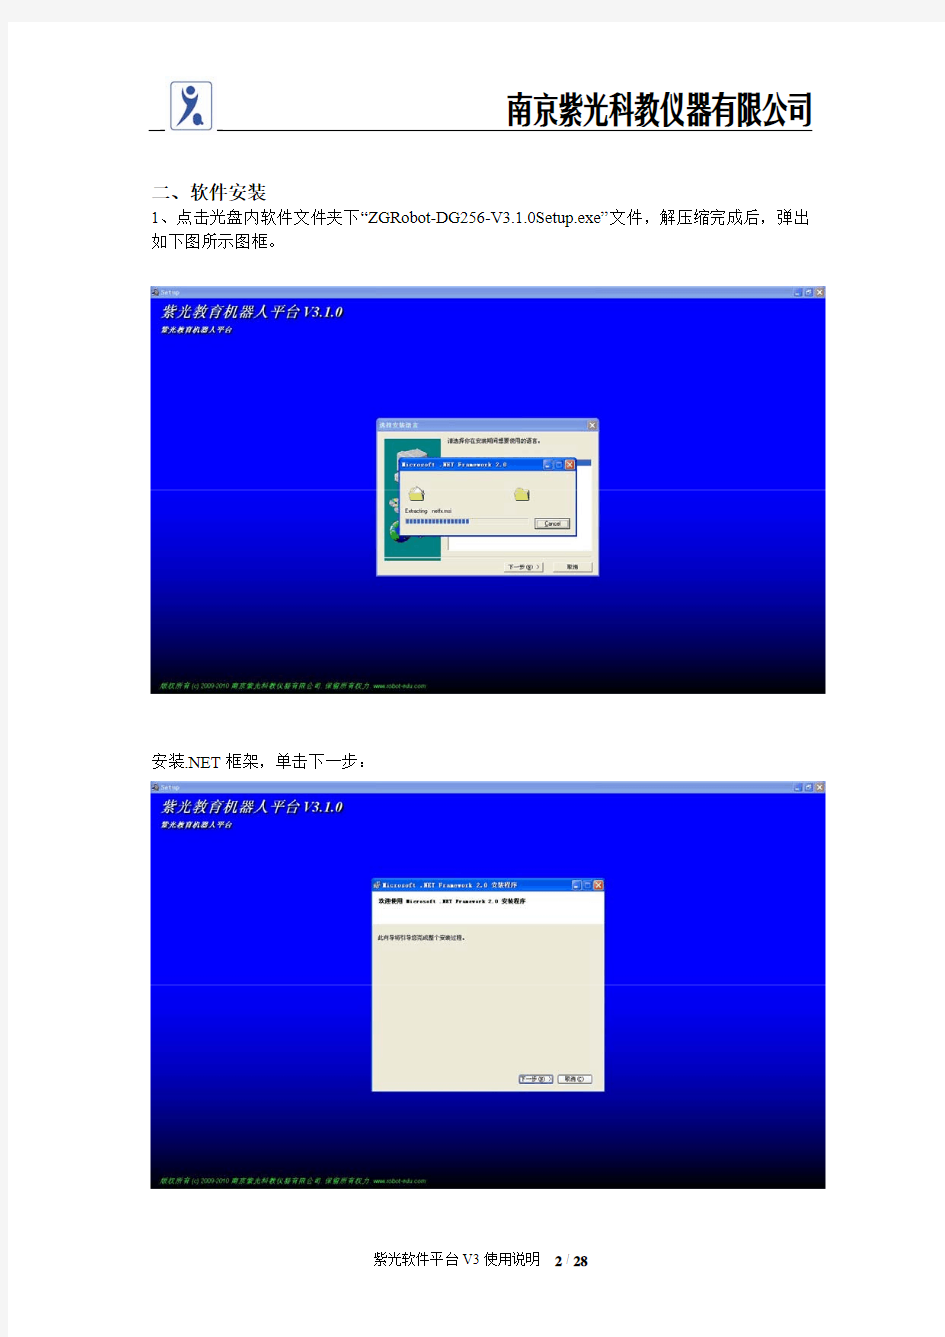 南京紫光教育机器人平台V3.1.0使用说明